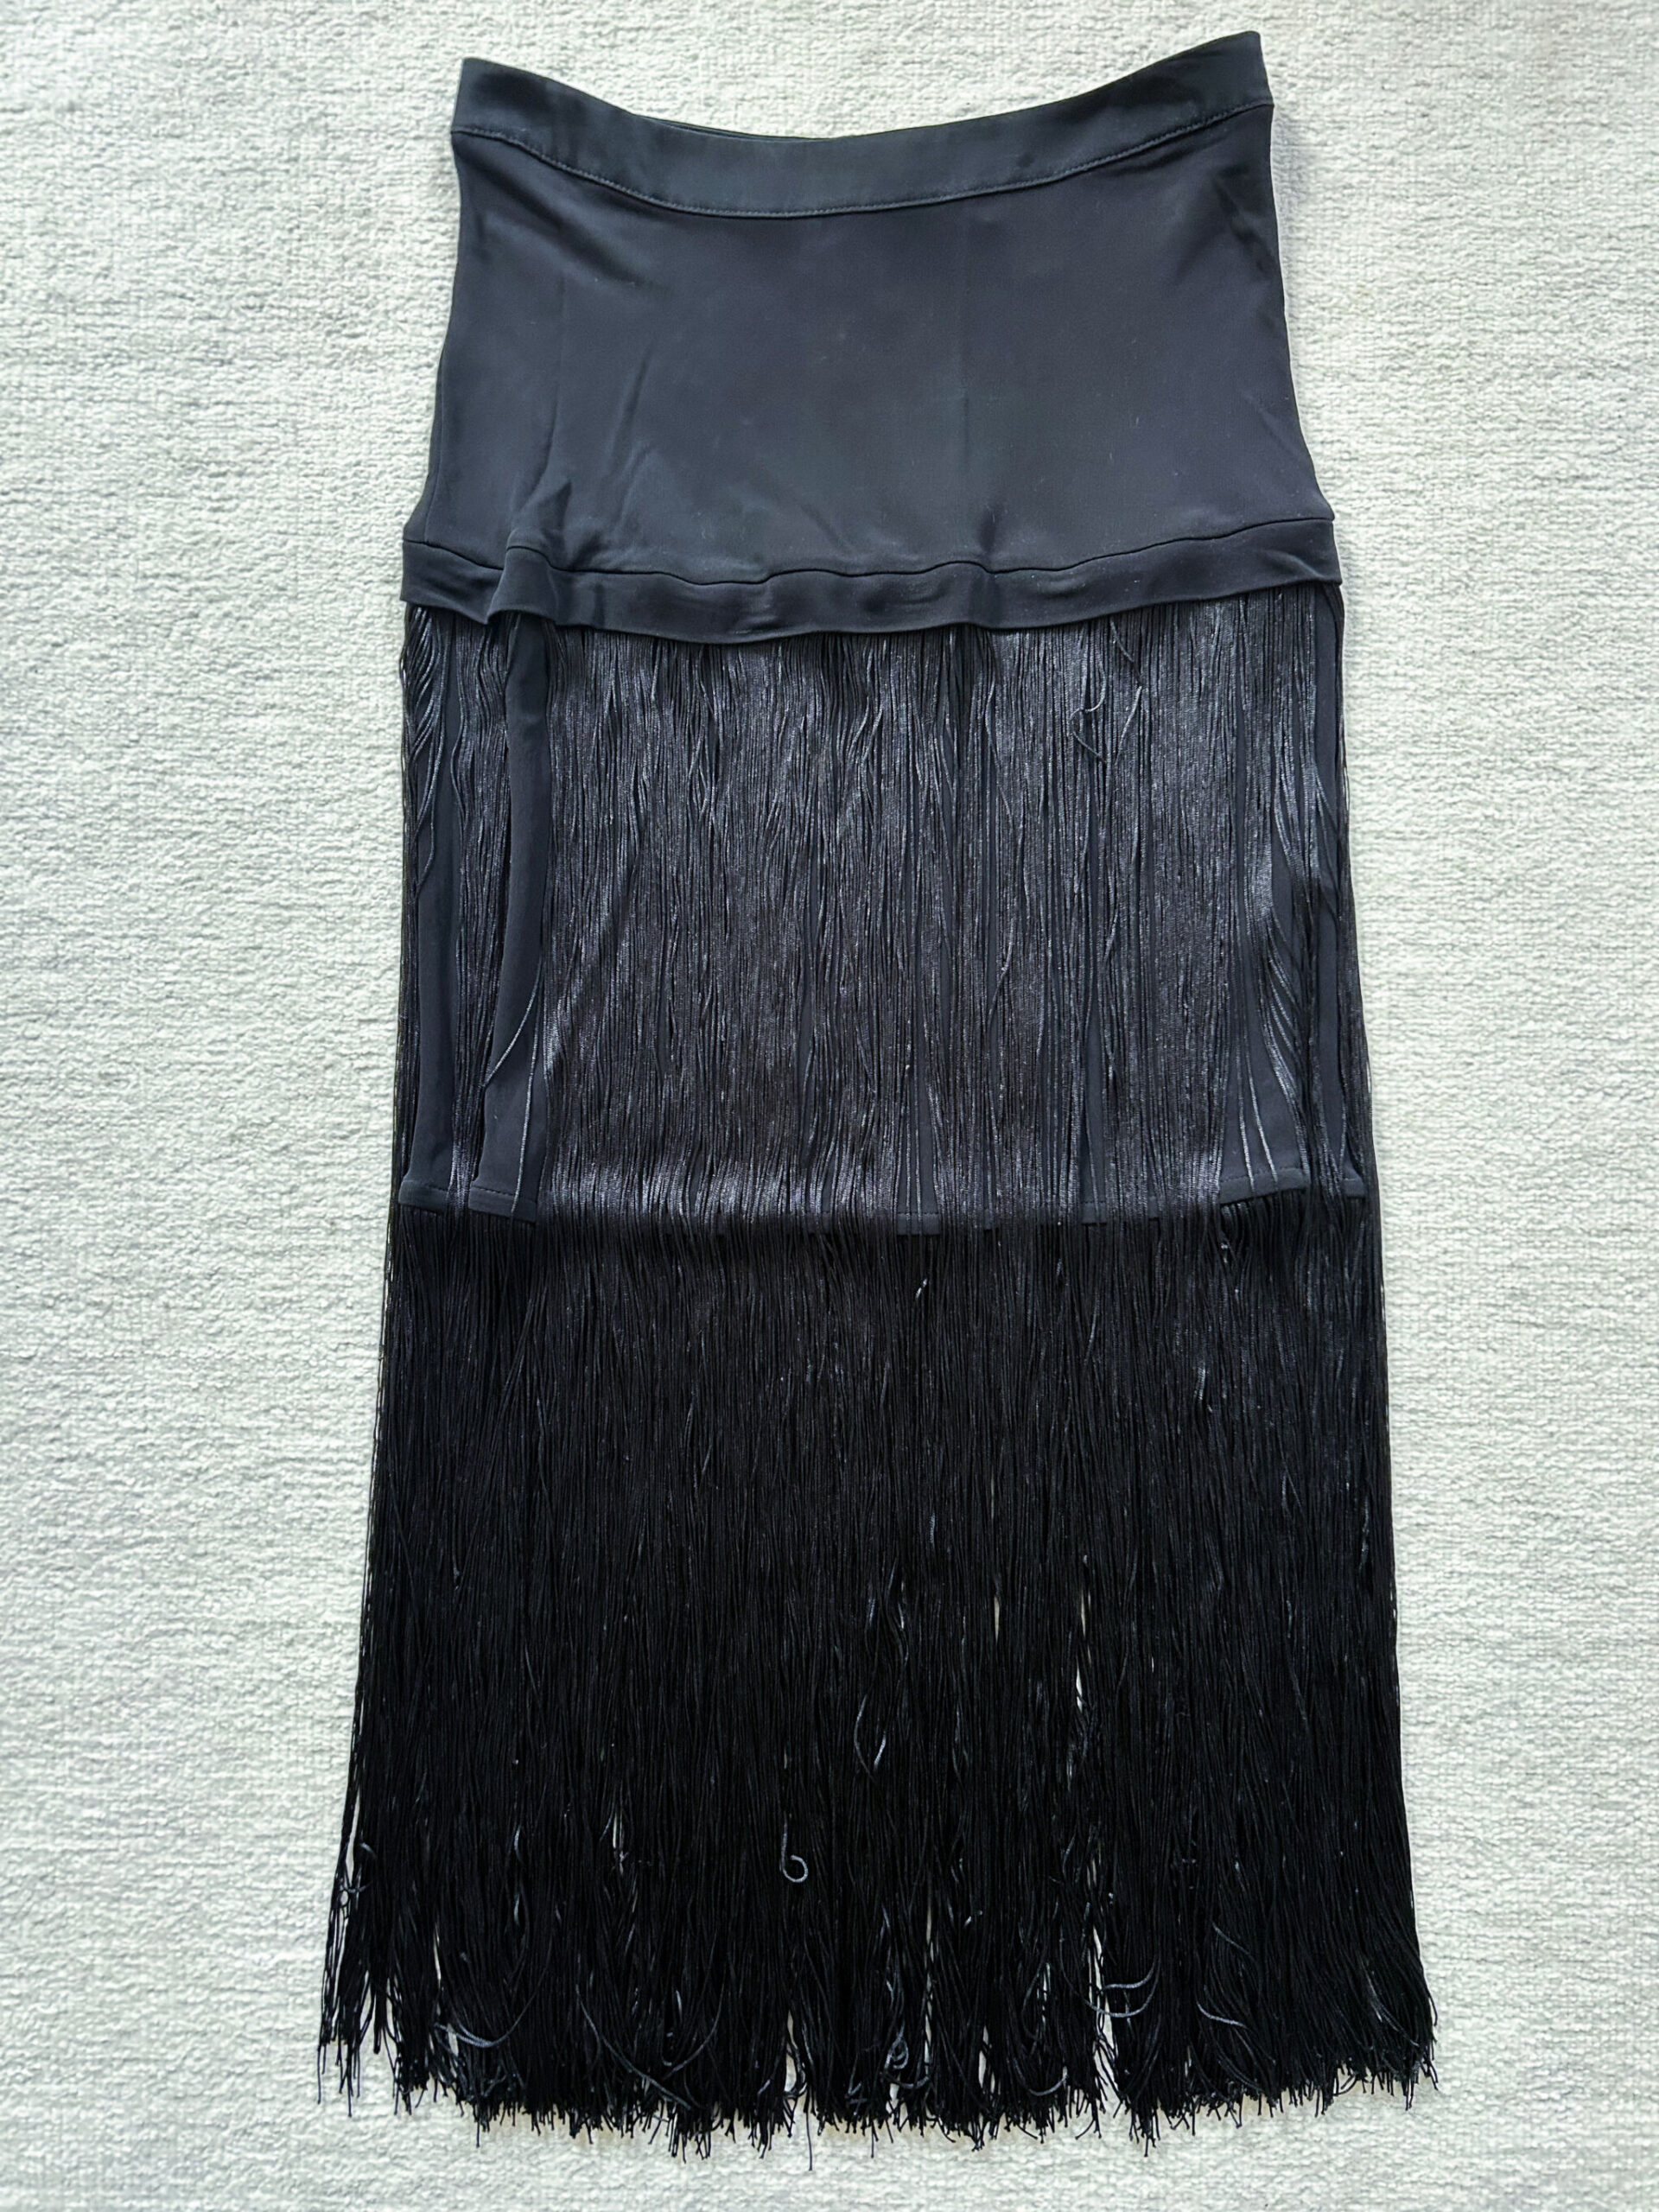 H&M Fringe Skirt Size 6 - Merideth Morgan